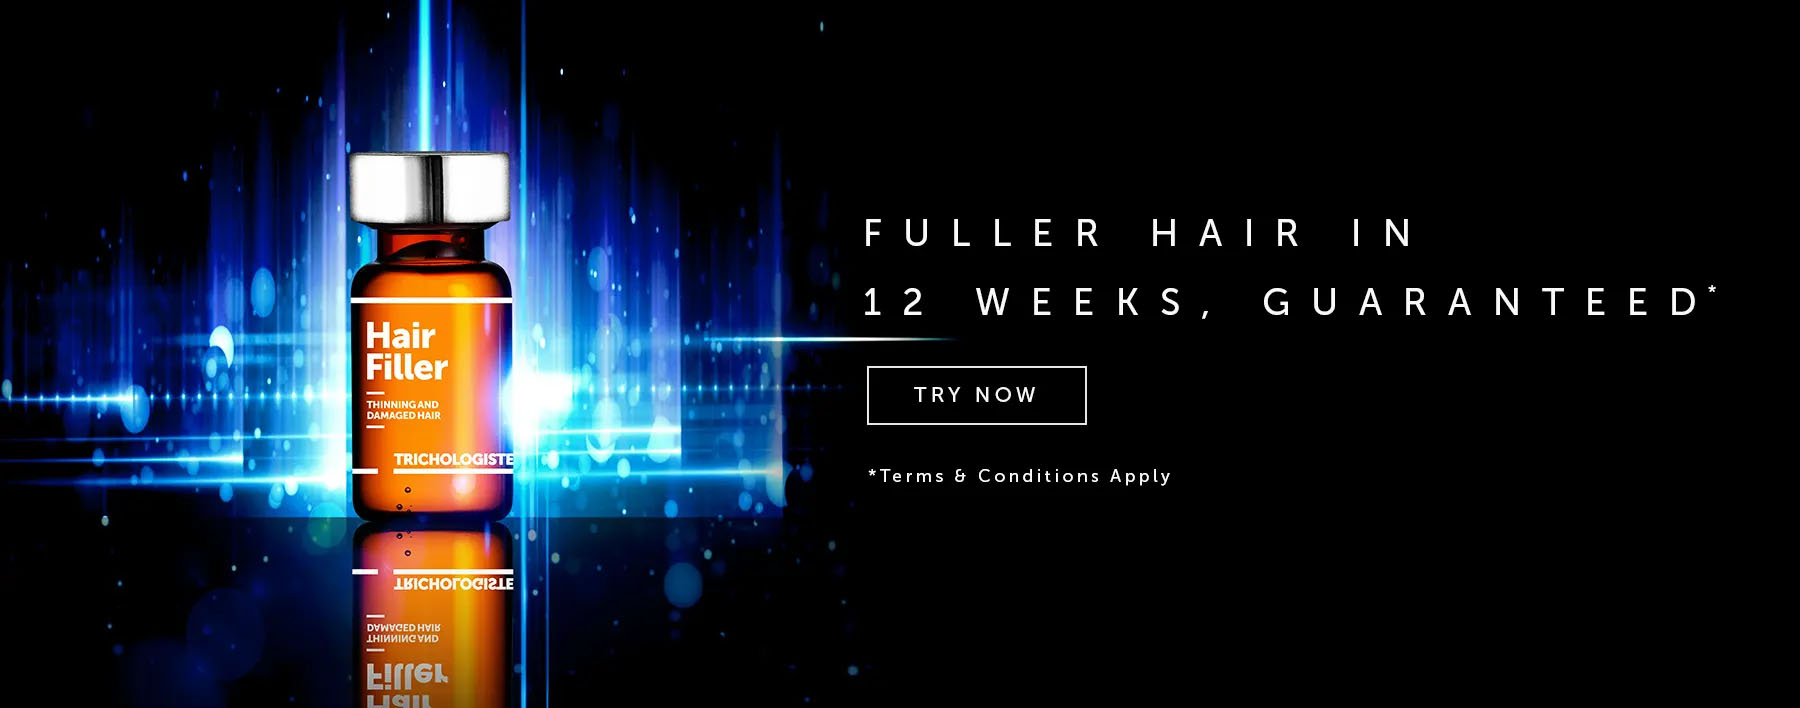 Fuller Hair in 12 Weeks, Guaranteed!